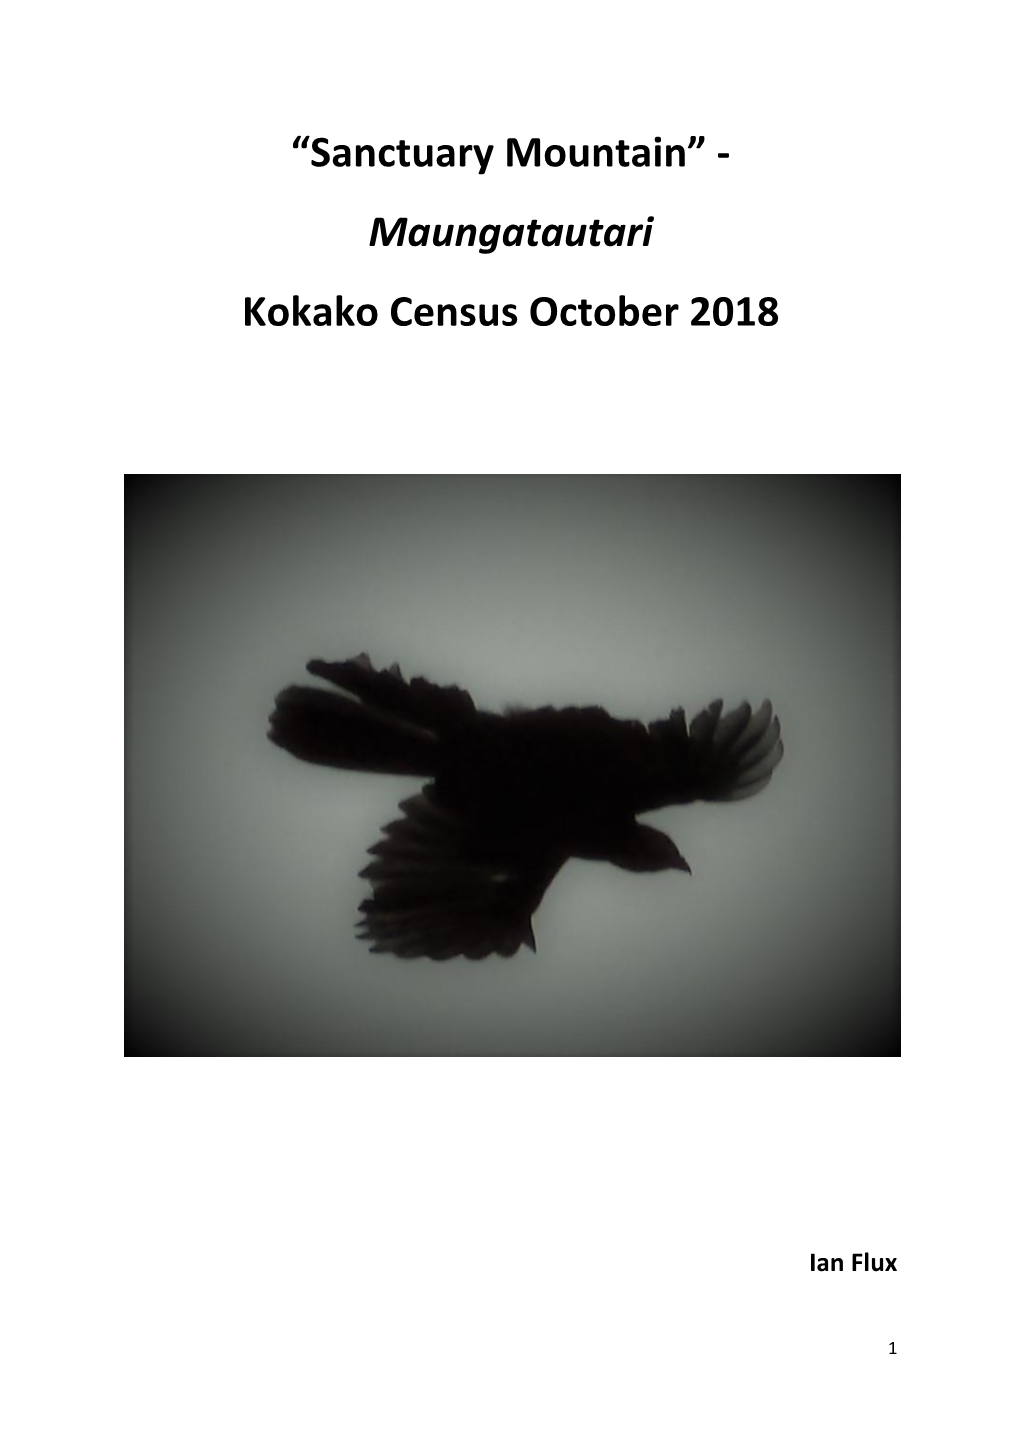 “Sanctuary Mountain” - Maungatautari Kokako Census October 2018